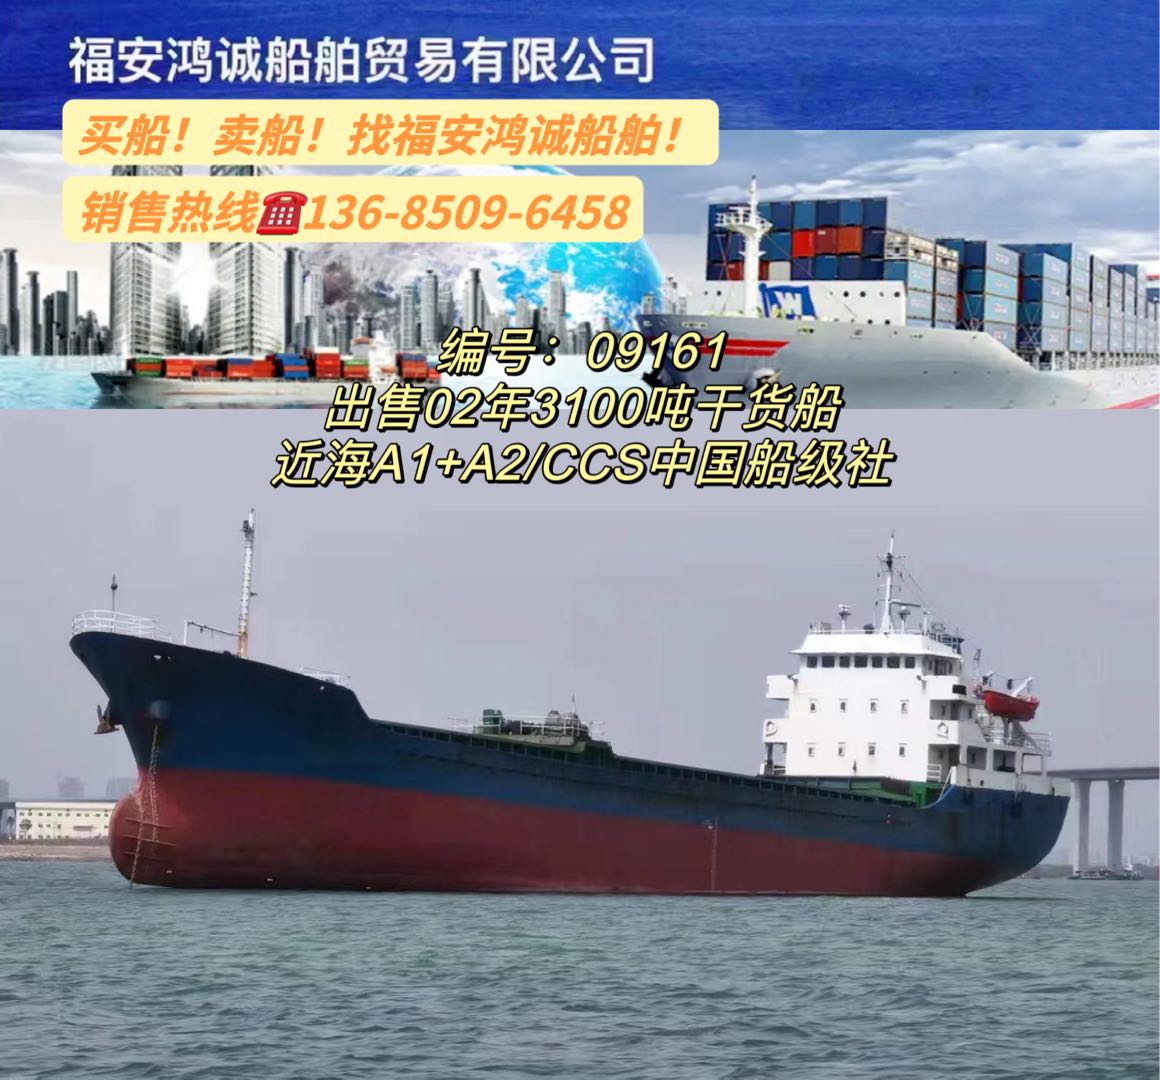 出售02年3100吨干货船